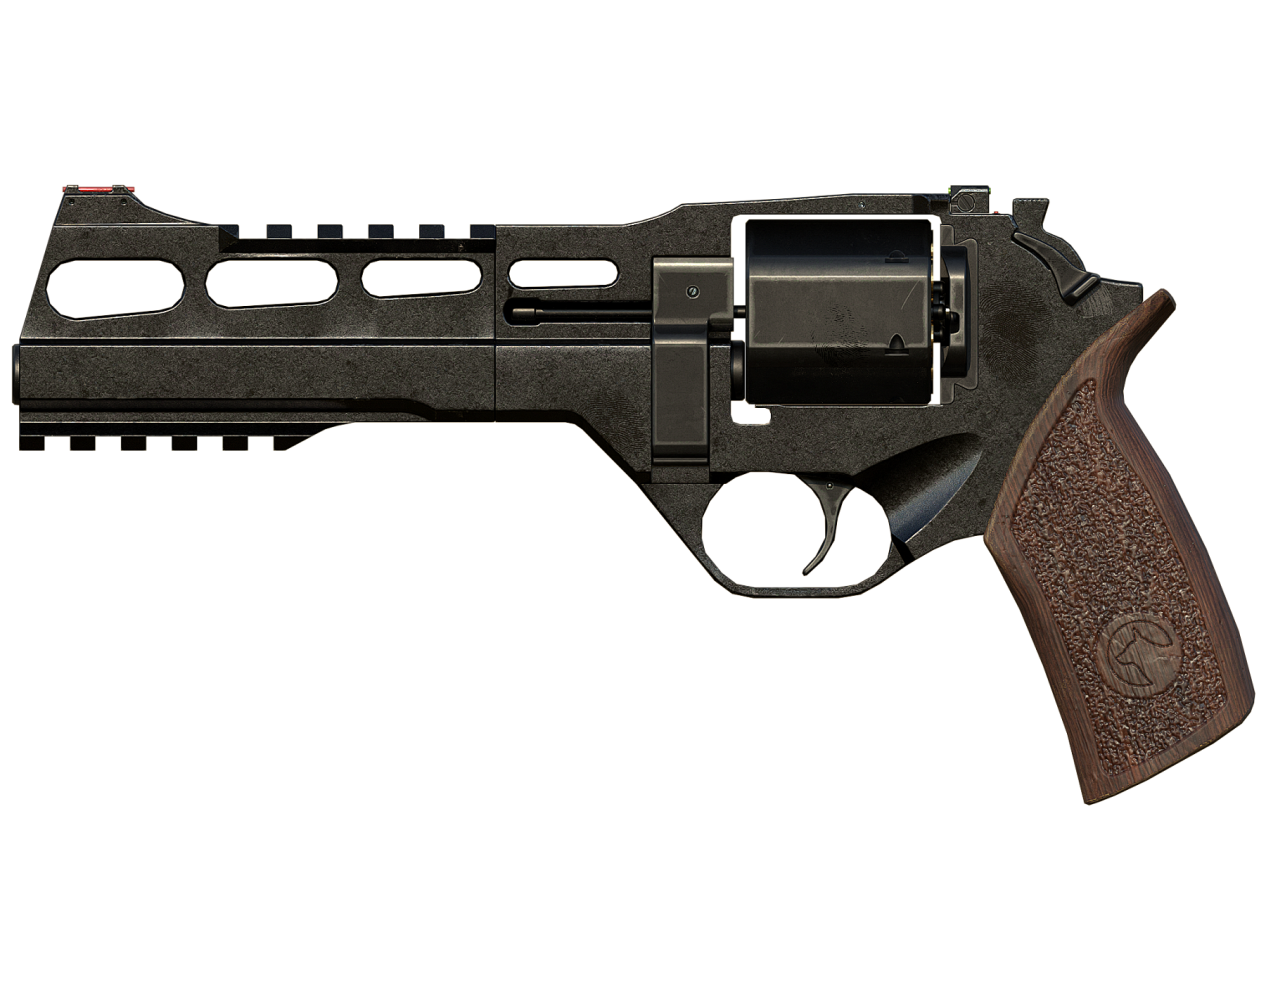 R45 意 大 利 制 造 的 现 代 六 发 左 轮 手 枪.使 用.45 口 径 的 弹 药.